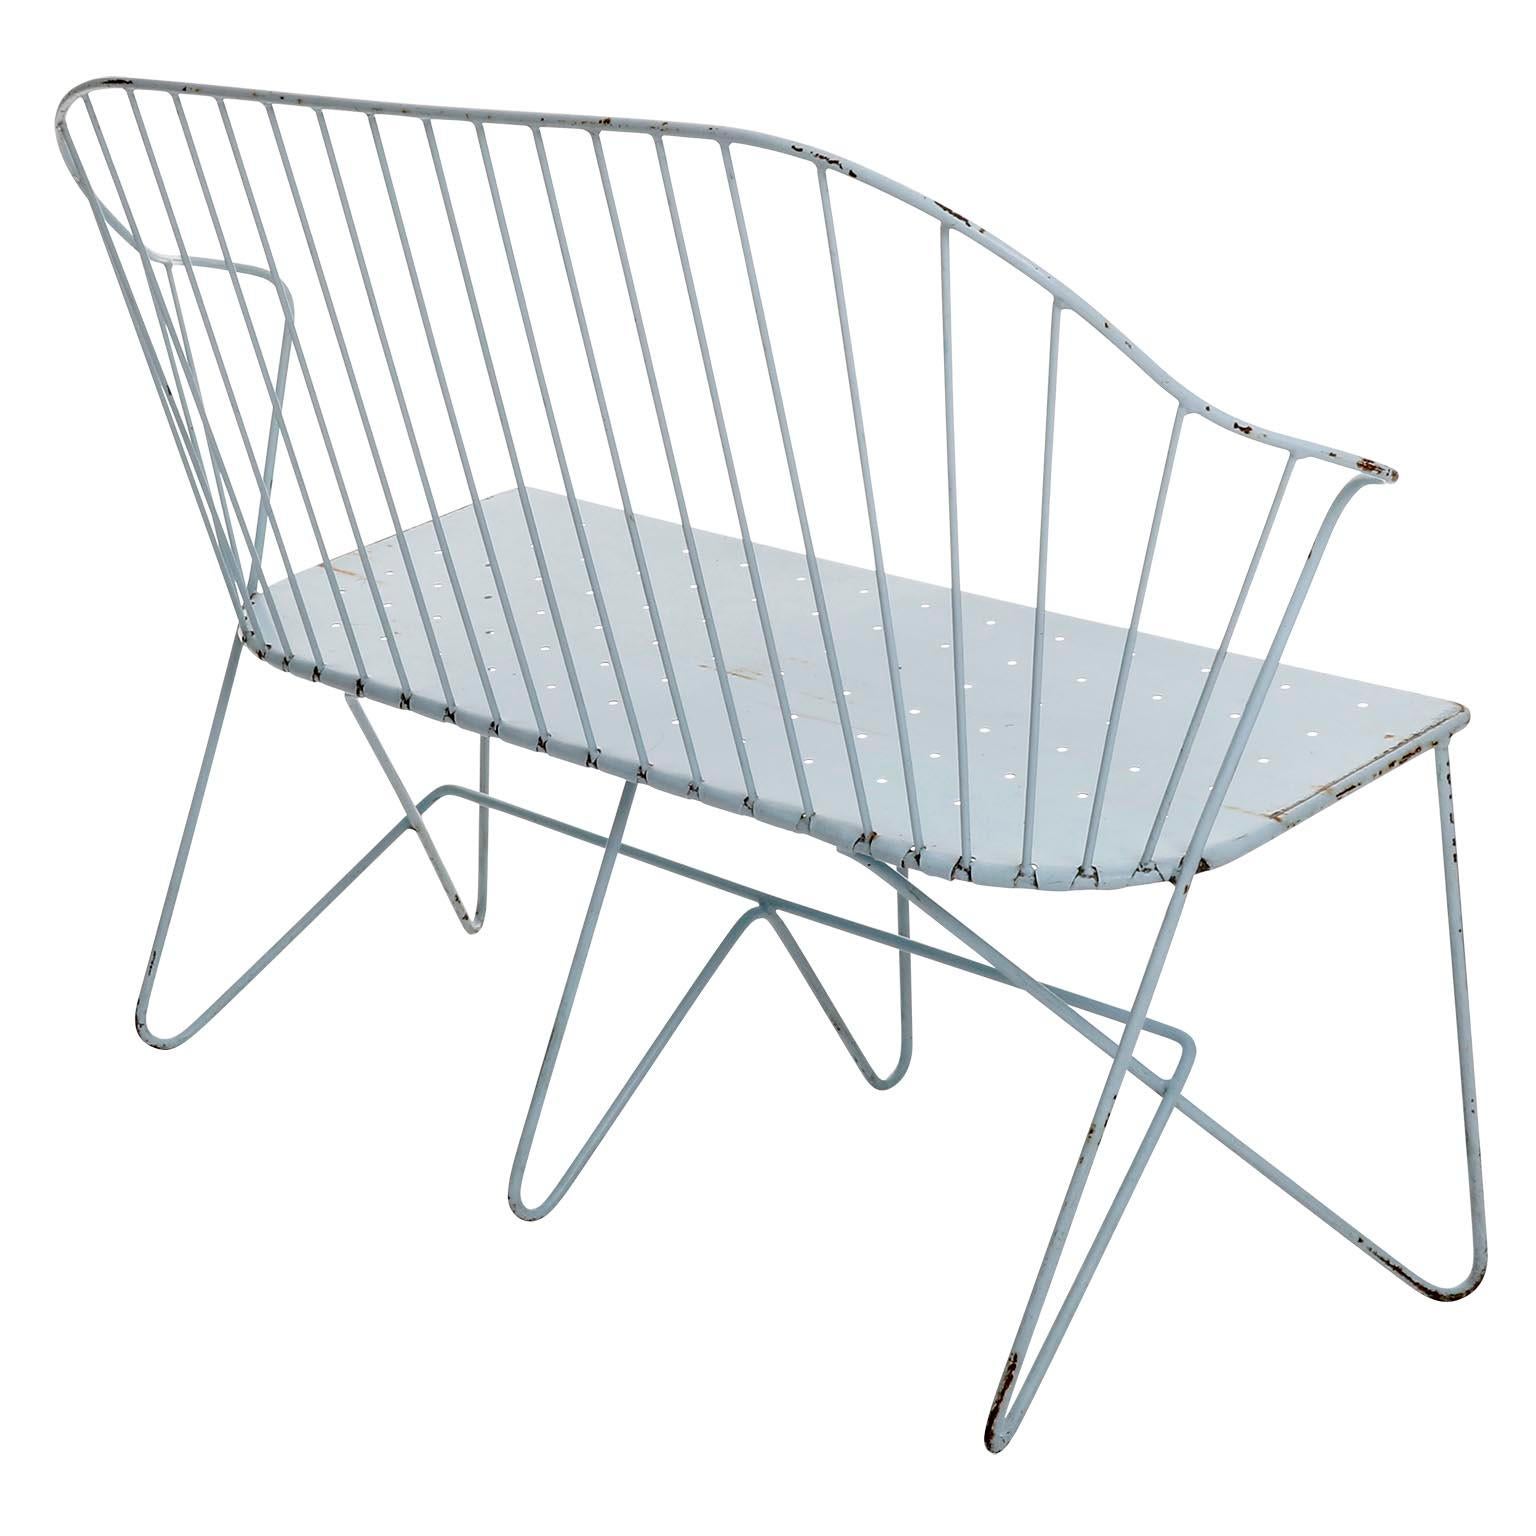 Mid-20th Century Set Wire Chairs Auersperg Bench Astoria Sonett, Karl Fostel, Blue Steel, 1950s For Sale